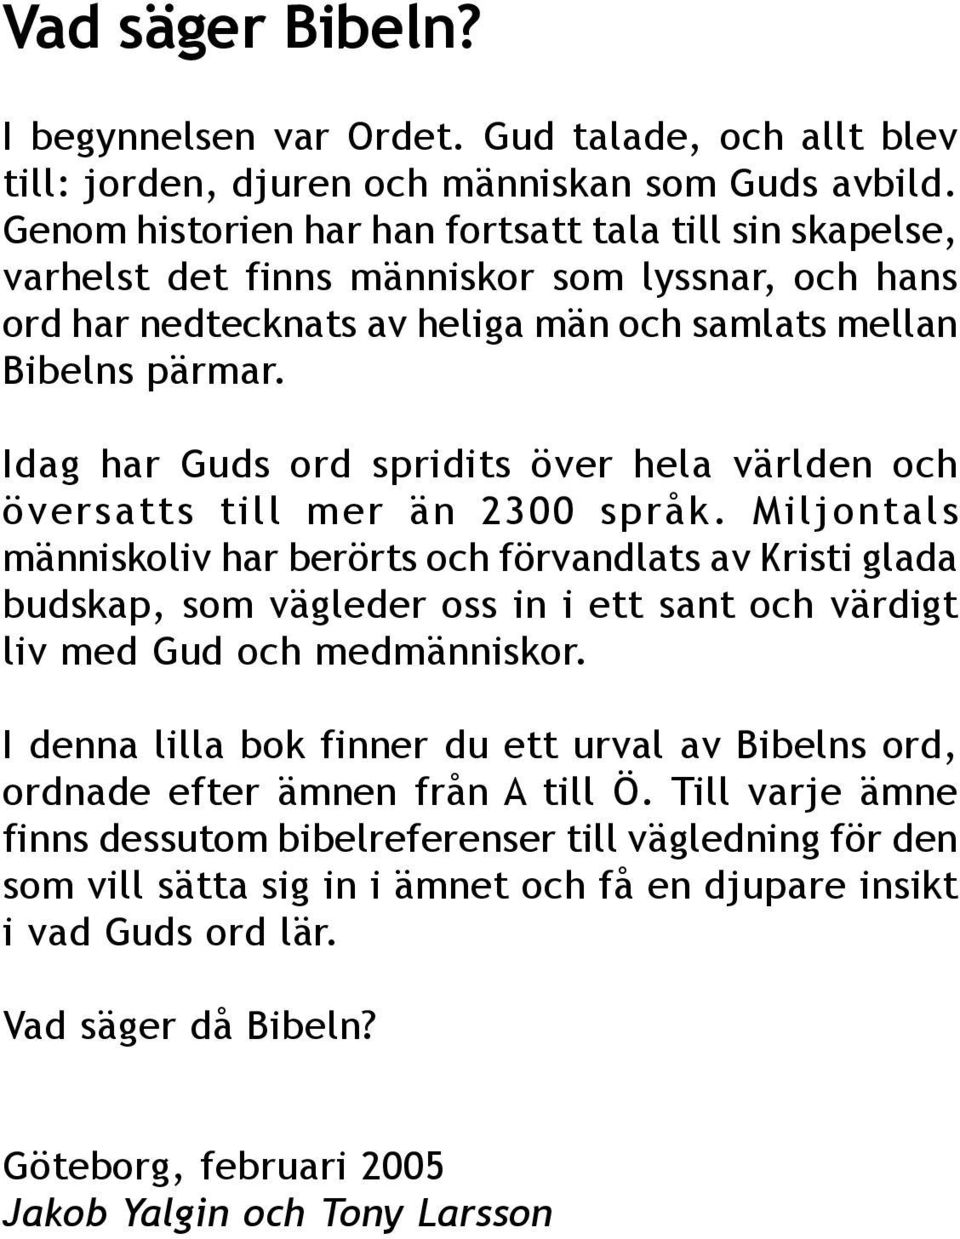 Alla bibelcitat är hämtade från Svenska Folkbibeln (1998) - PDF 